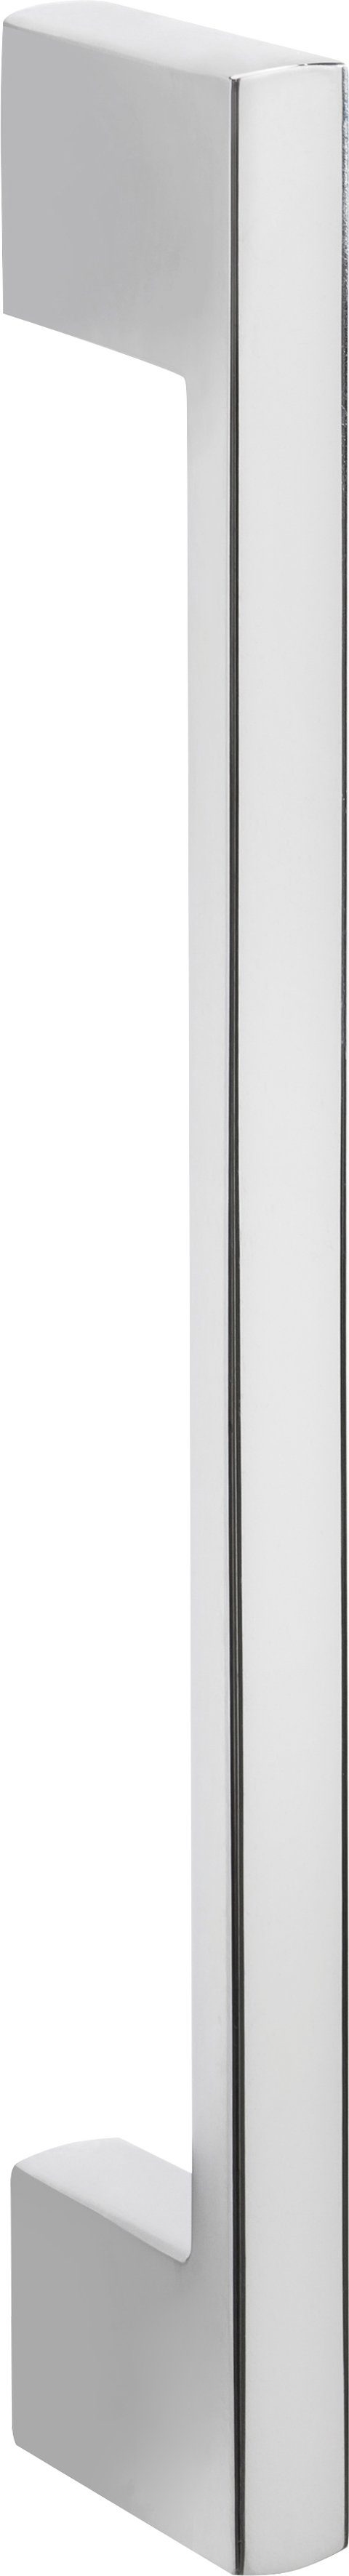 Colmar Nische cm 88 hoch, breit, 60 grafitgrau Kühlumbauschrank geeignet cm HELD wotaneiche/grafitgrau Einbaukühlschrank für 165 cm MÖBEL |